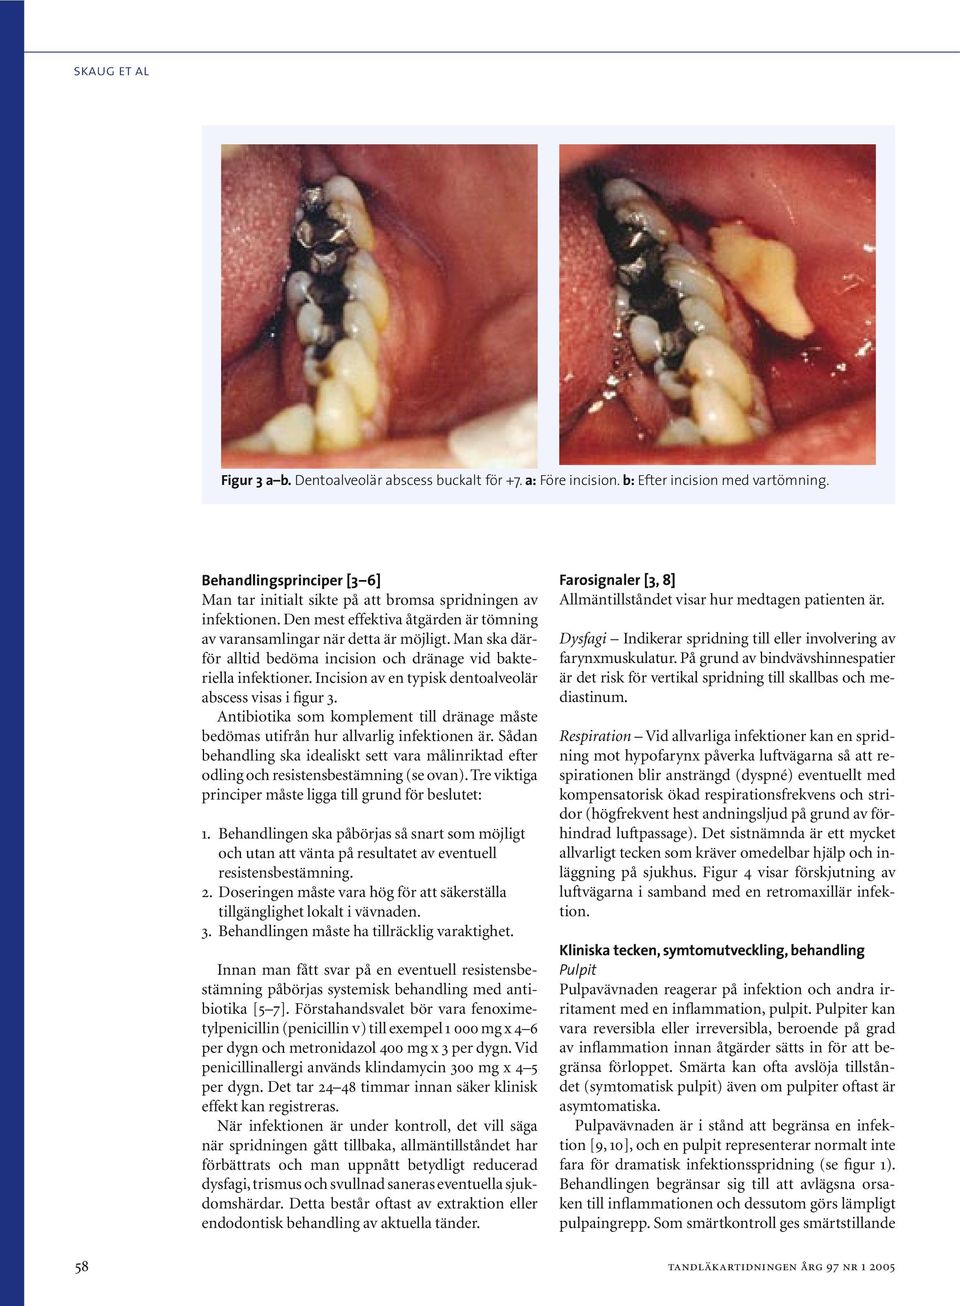 Man ska därför alltid bedöma incision och dränage vid bakteriella infektioner. Incision av en typisk dentoalveolär abscess visas i figur 3.